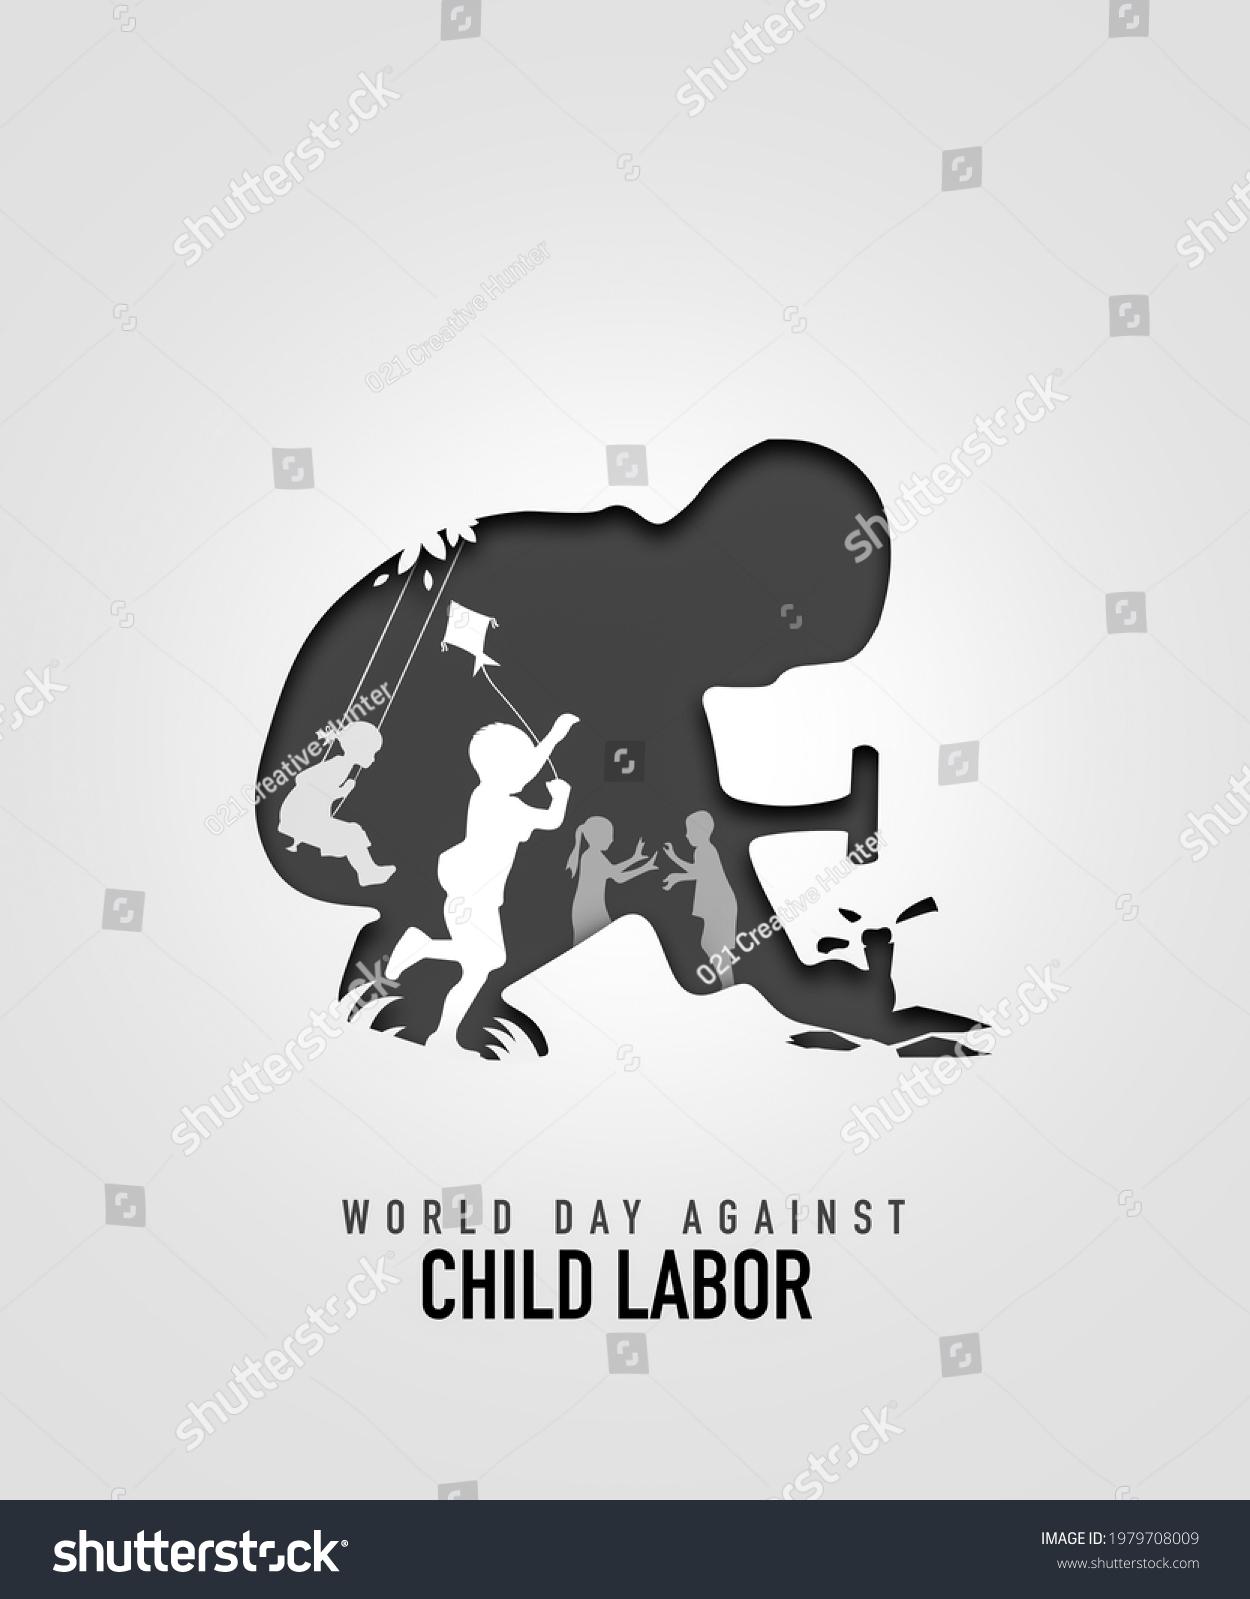 Child Labour Image Stock Photos Vectors Shutterstock